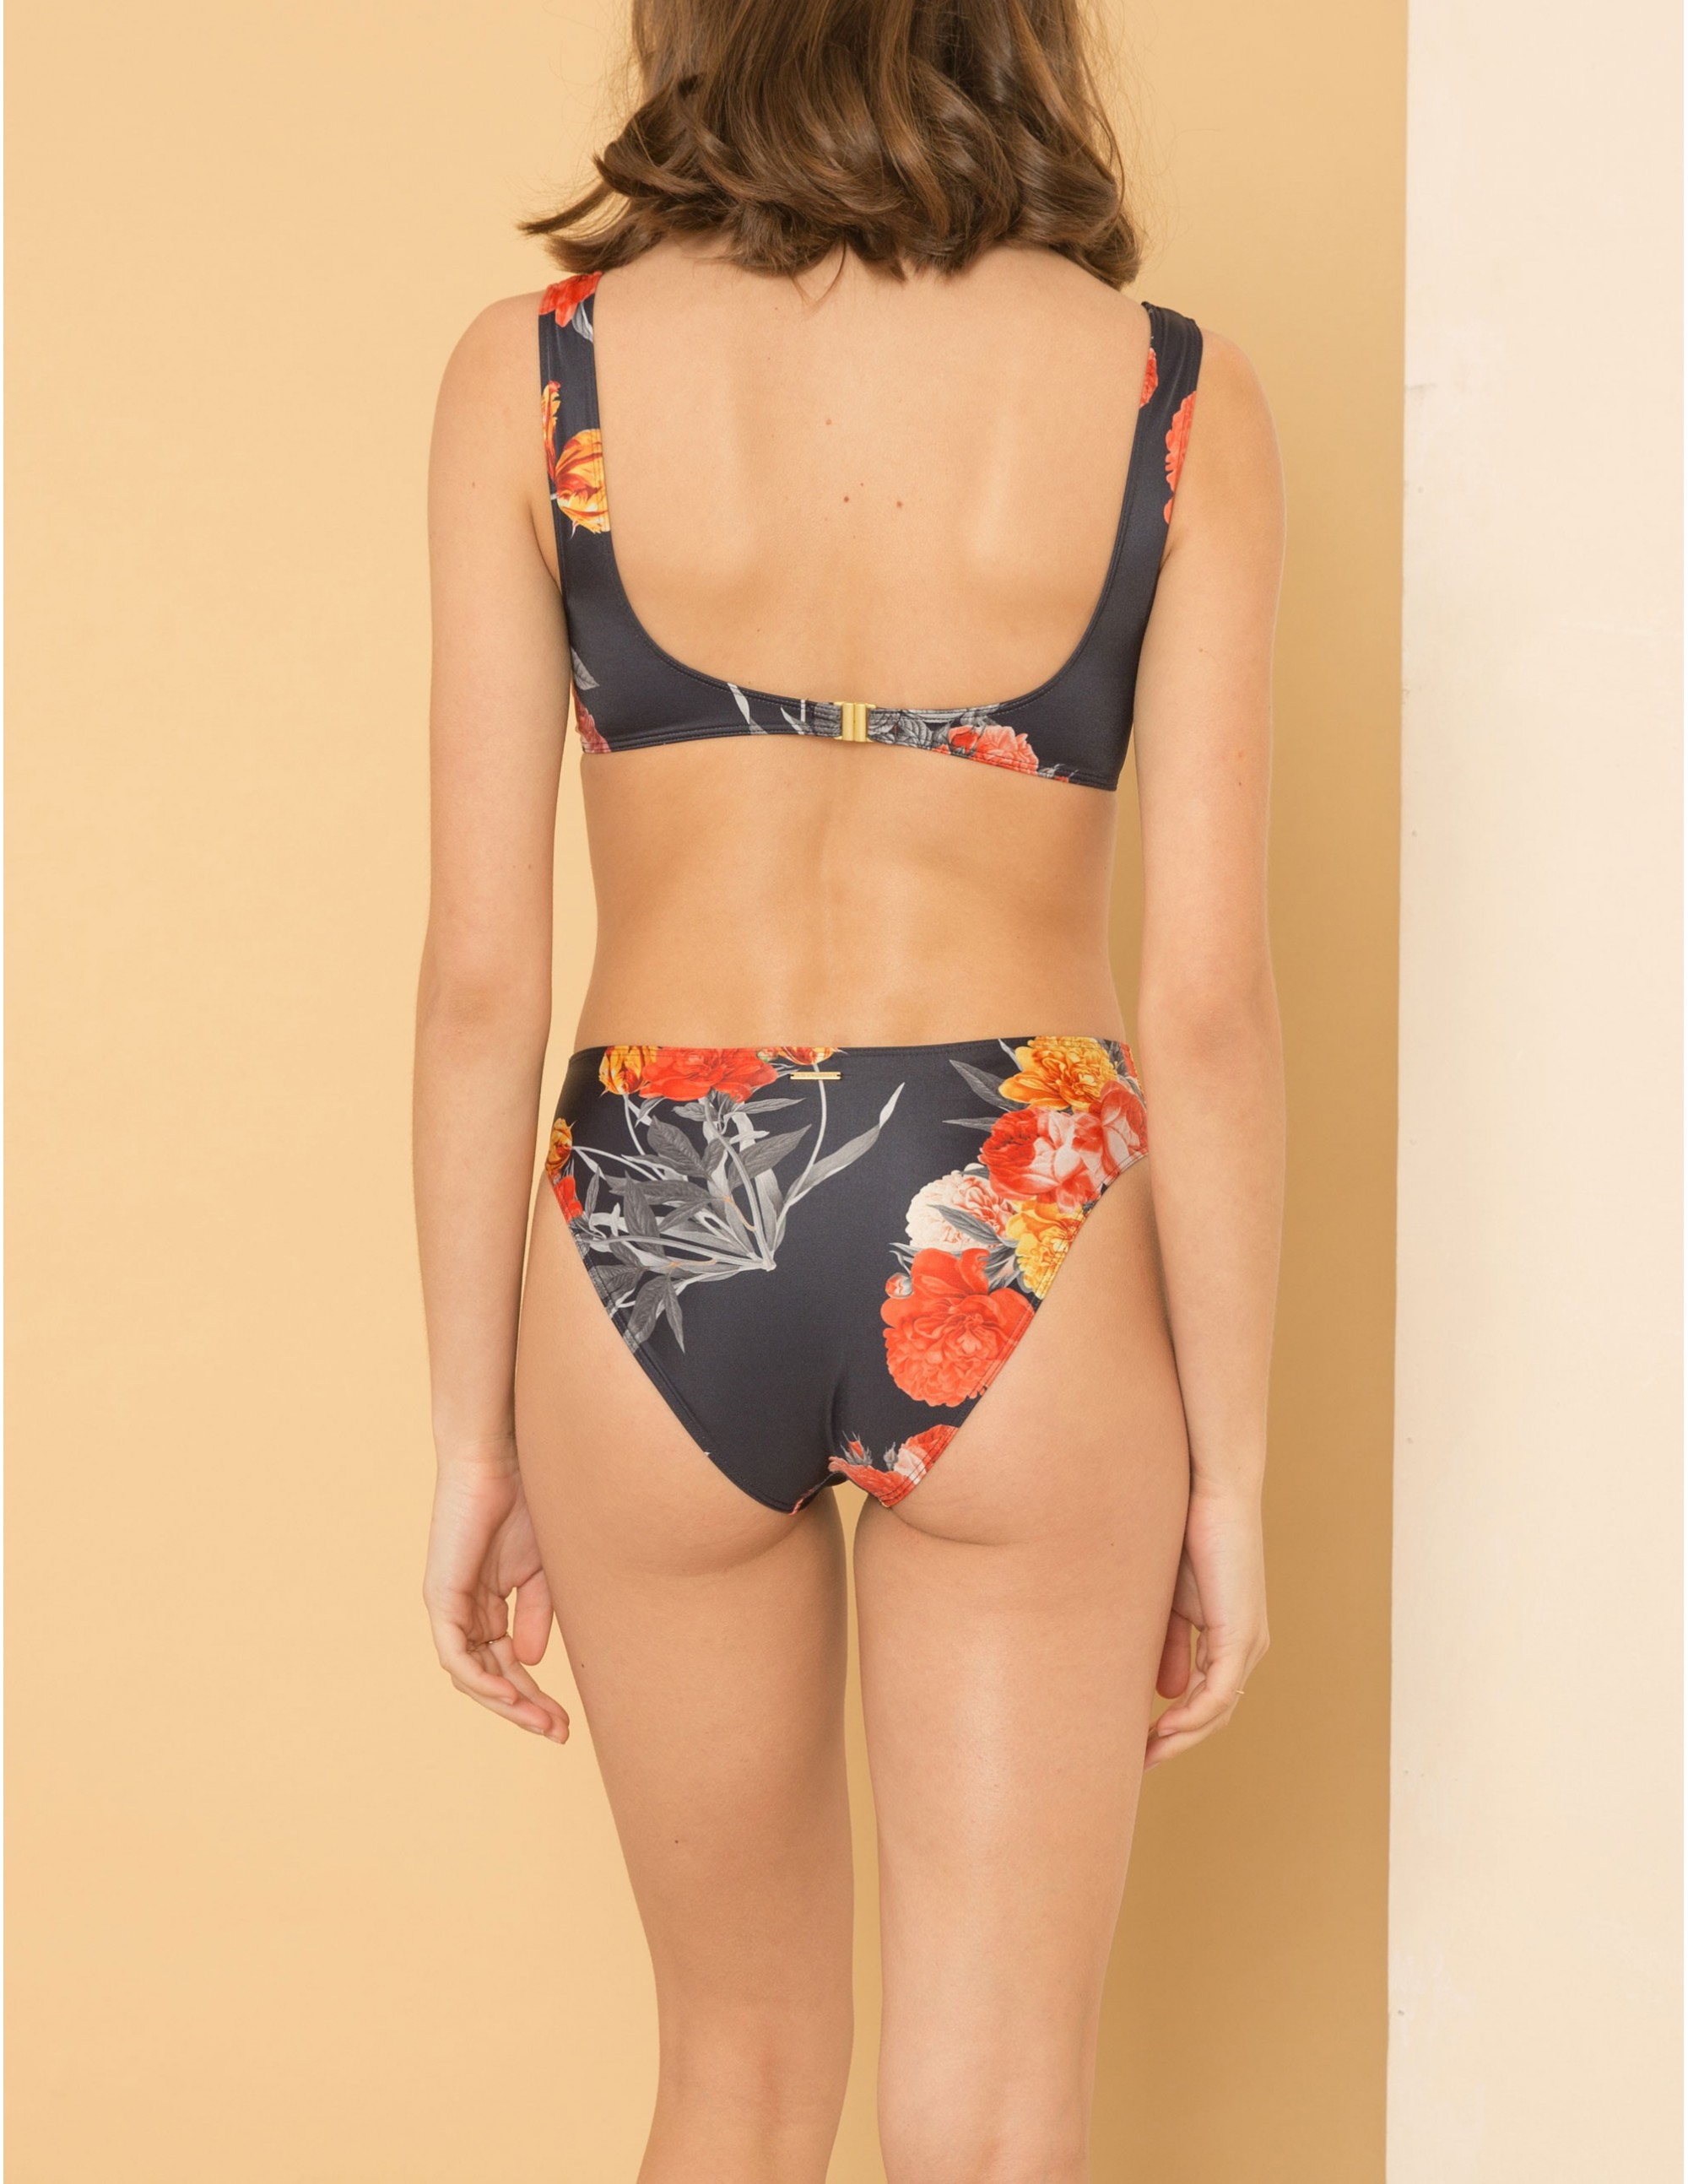 SONGO bikini top - SECRET GARDEN